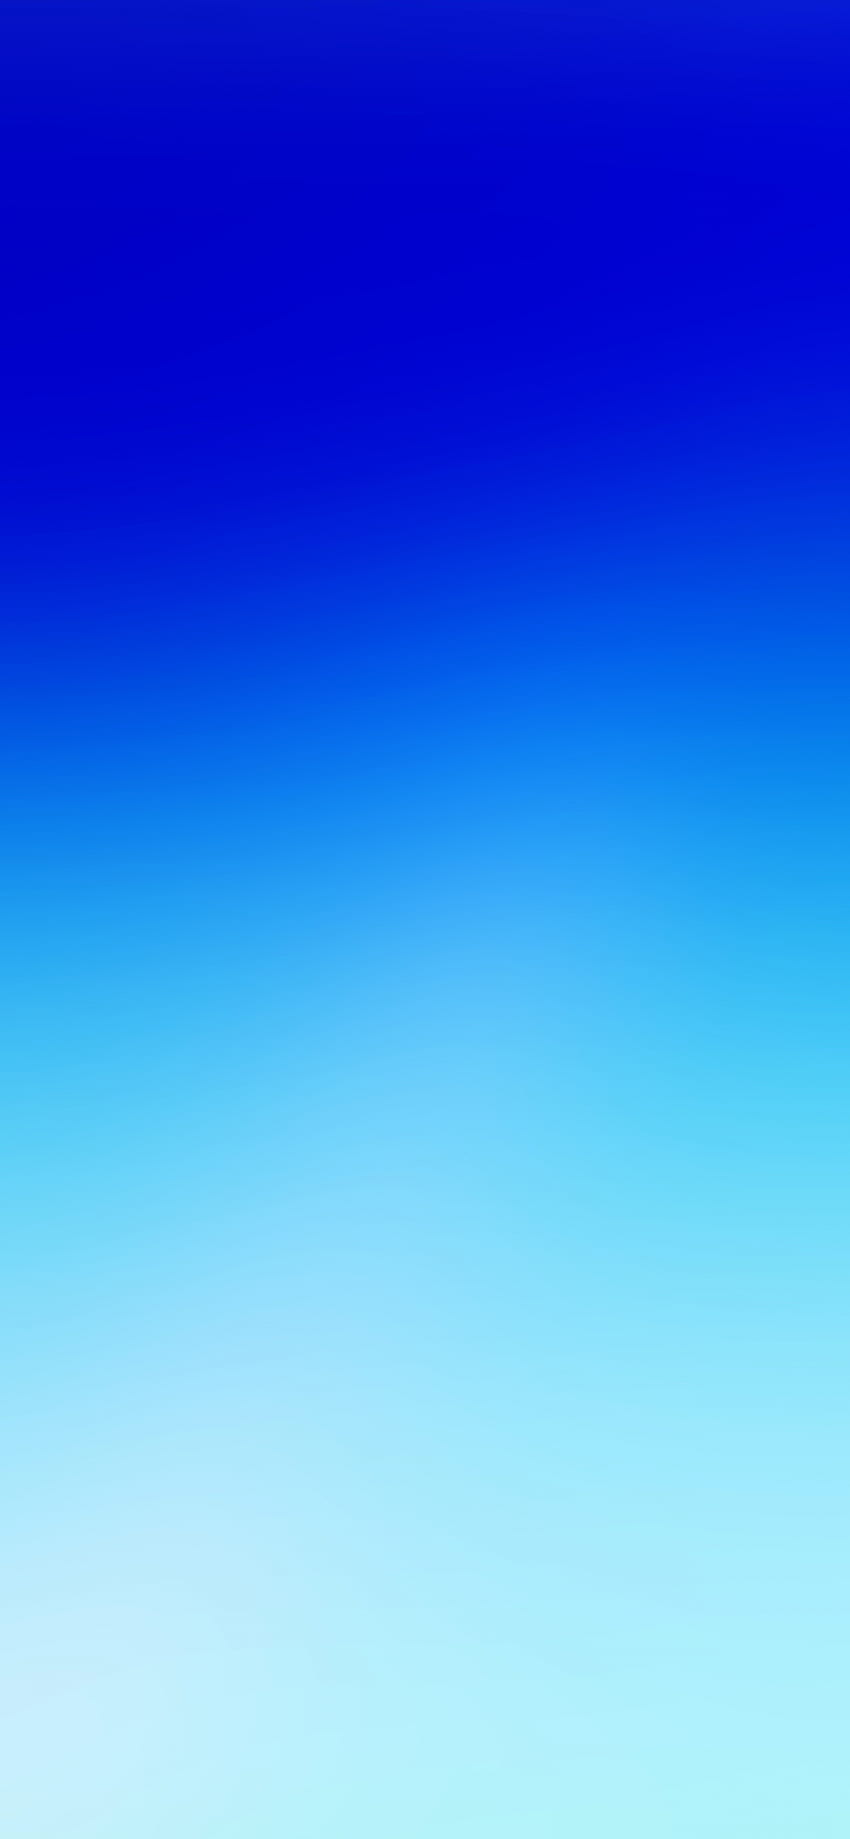 Fundo azul do iPhone Único iPhone de 10 cores sólidas Preto Branco Cinza Vermelho Azul e mais Ios Hacker Inspiration - Left of The Hudson Papel de parede de celular HD